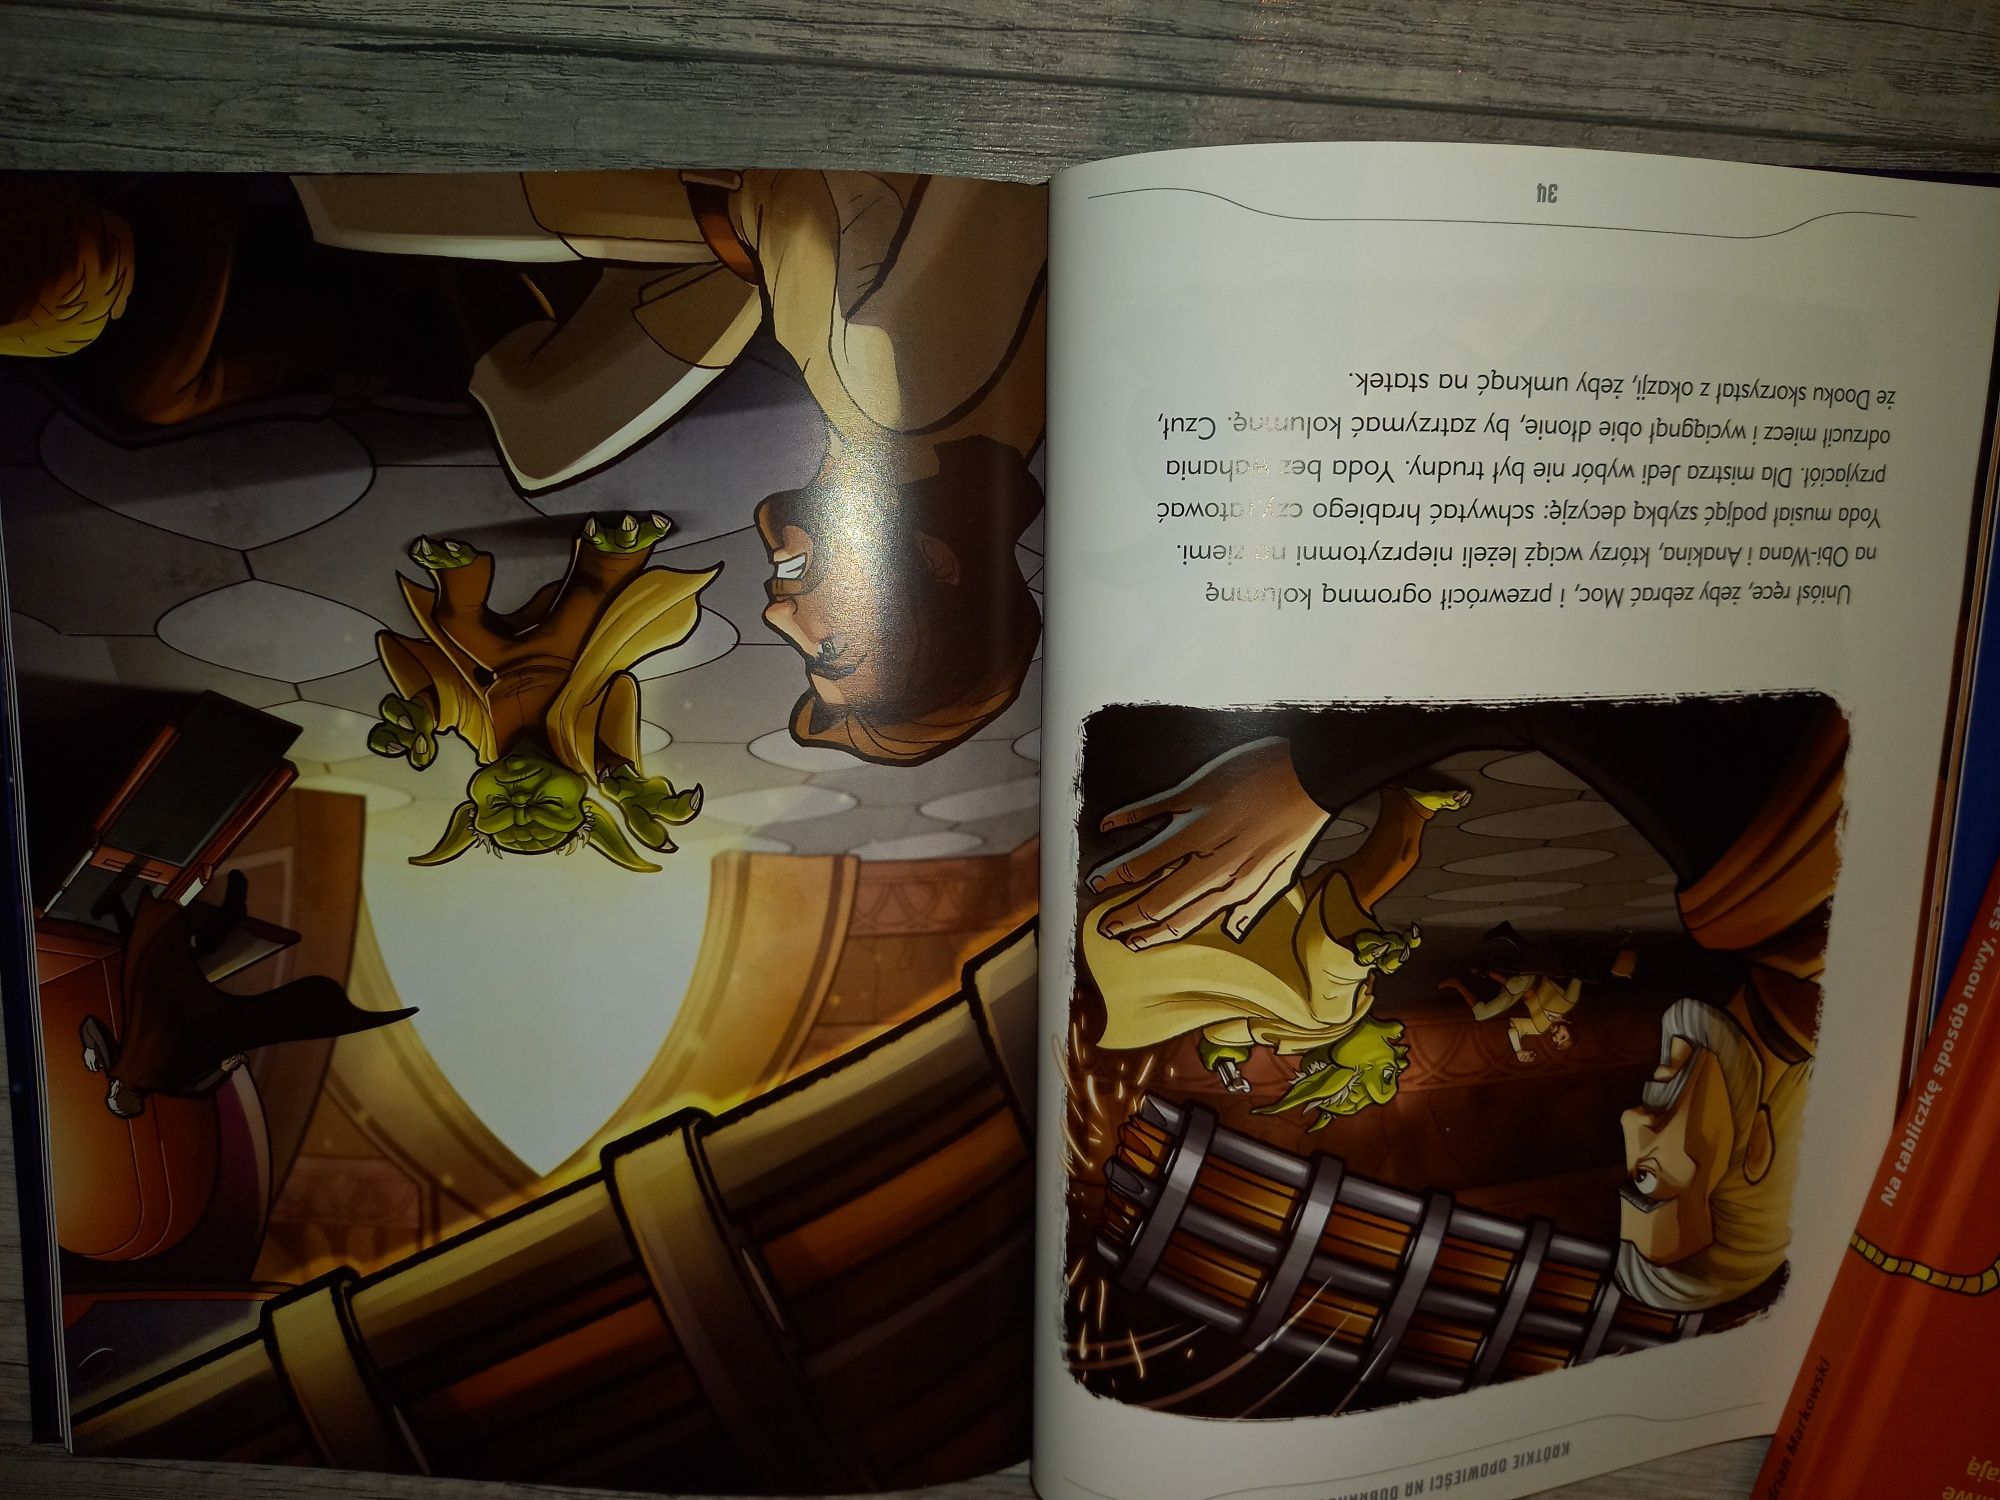 Star Wars Krótkie Opowieści na Dobranoc ! Książka dla dzieci !